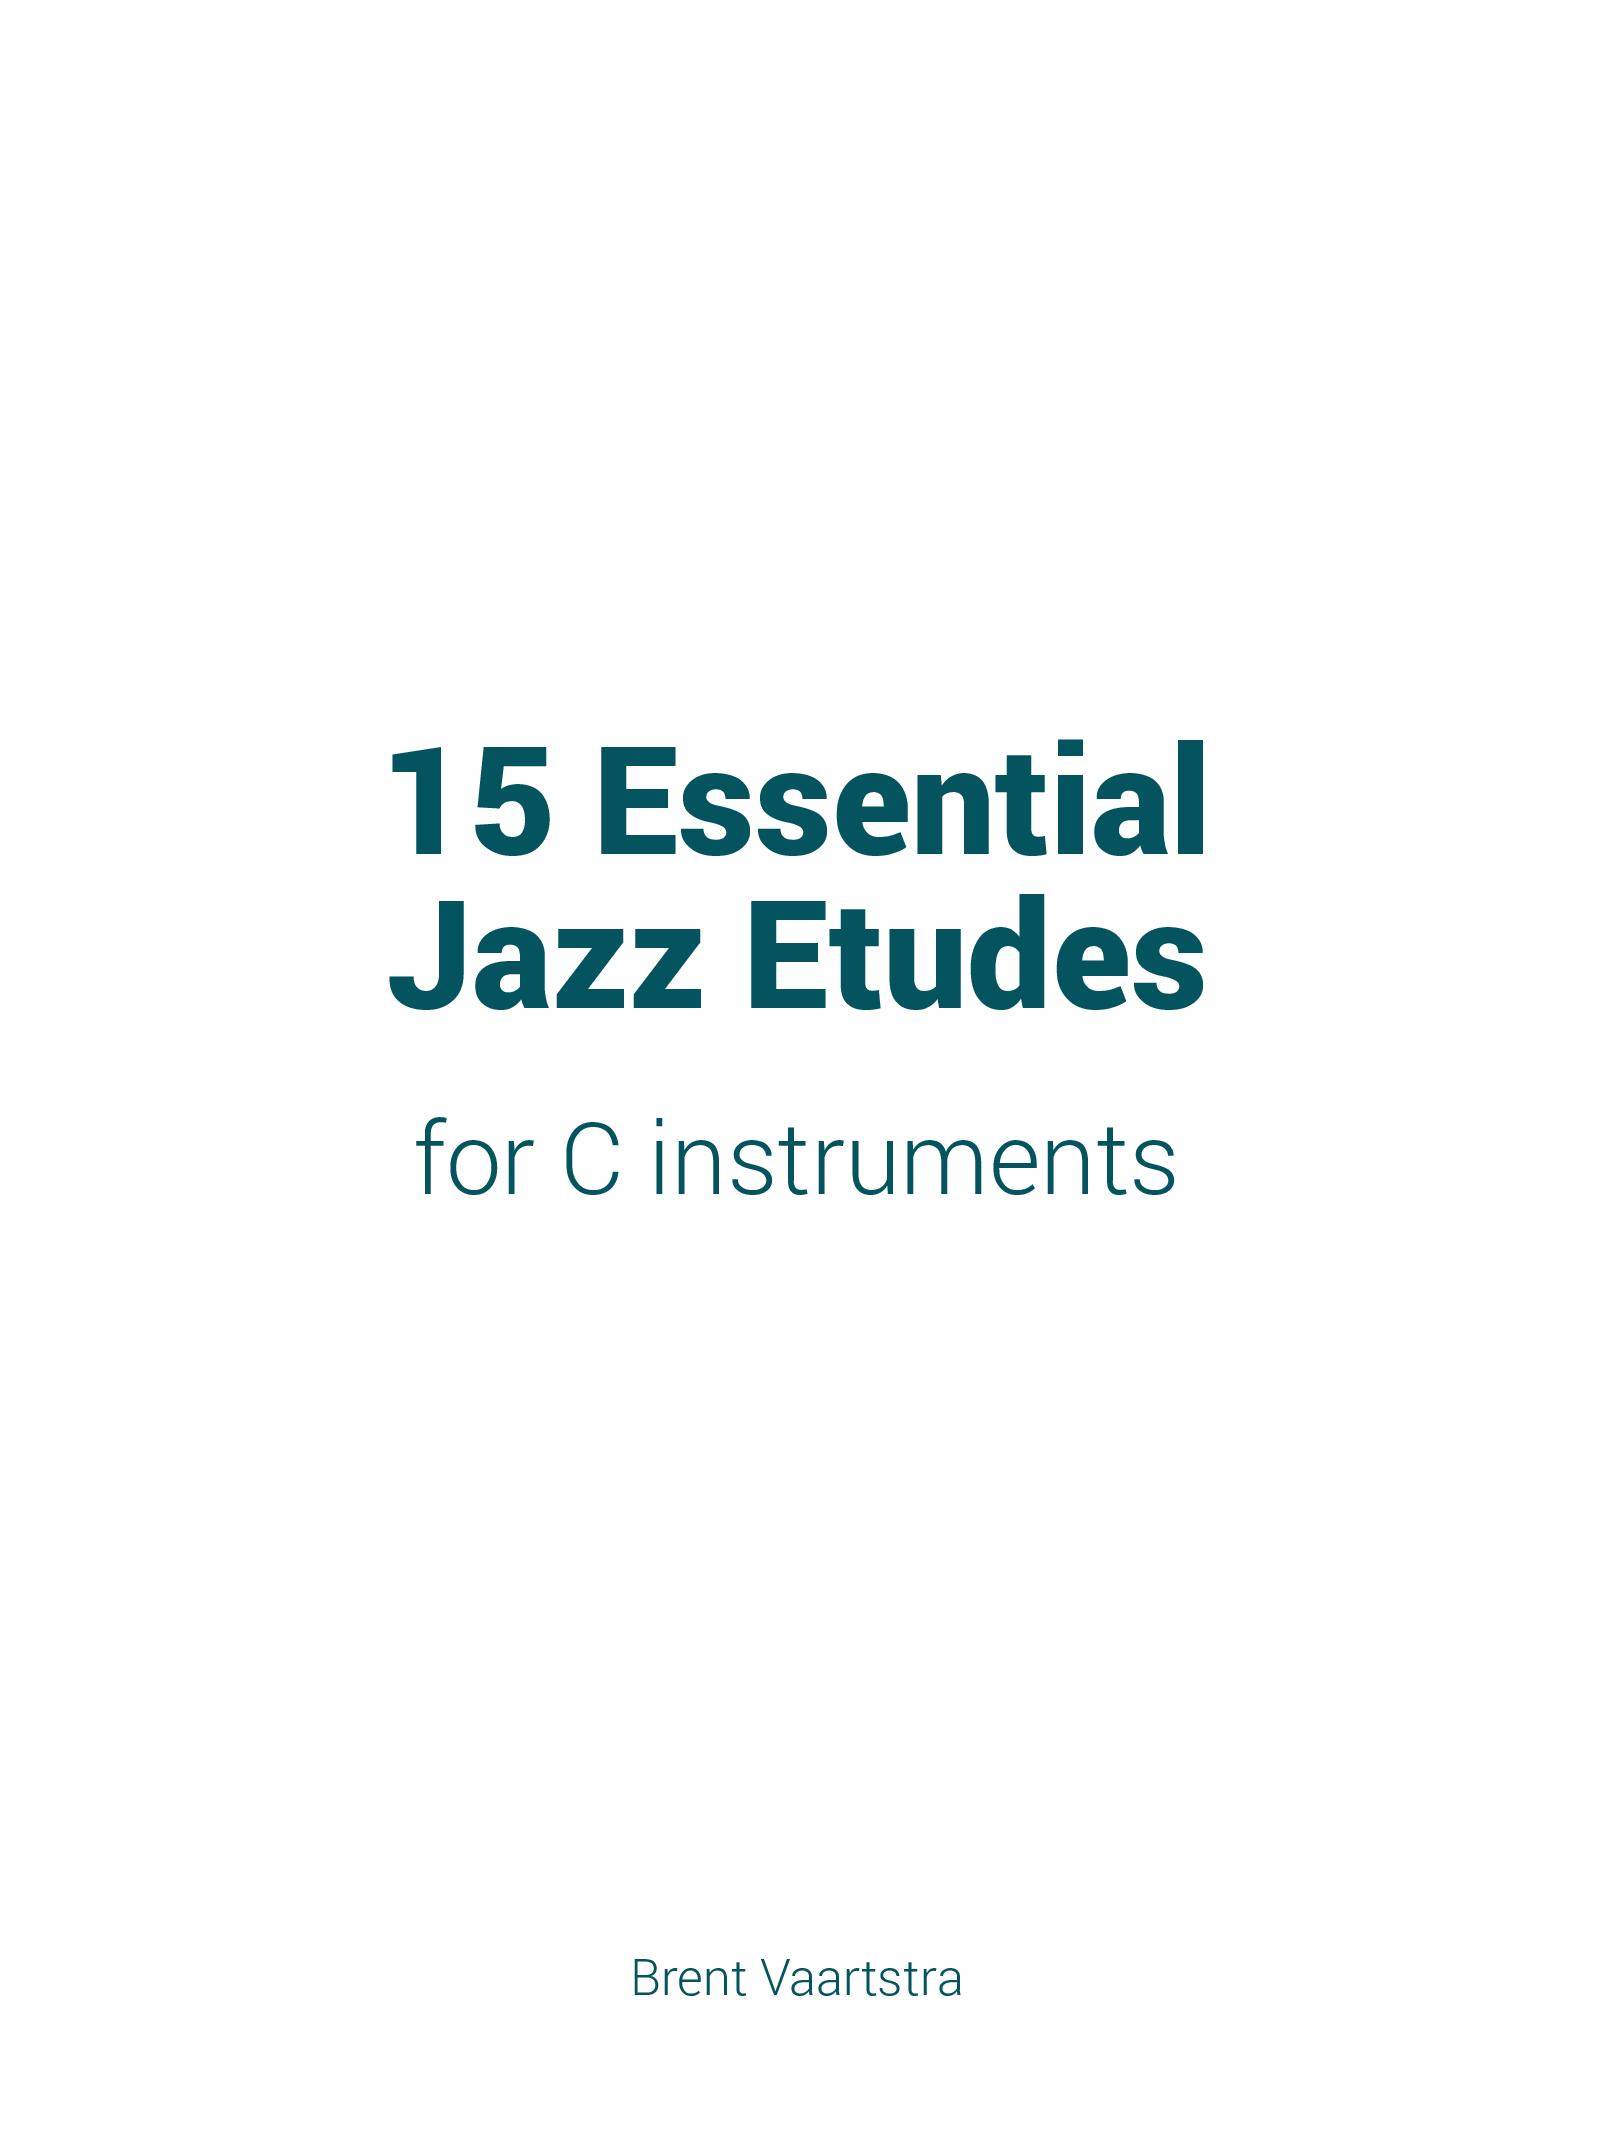 15 Essential Jazz Etudes